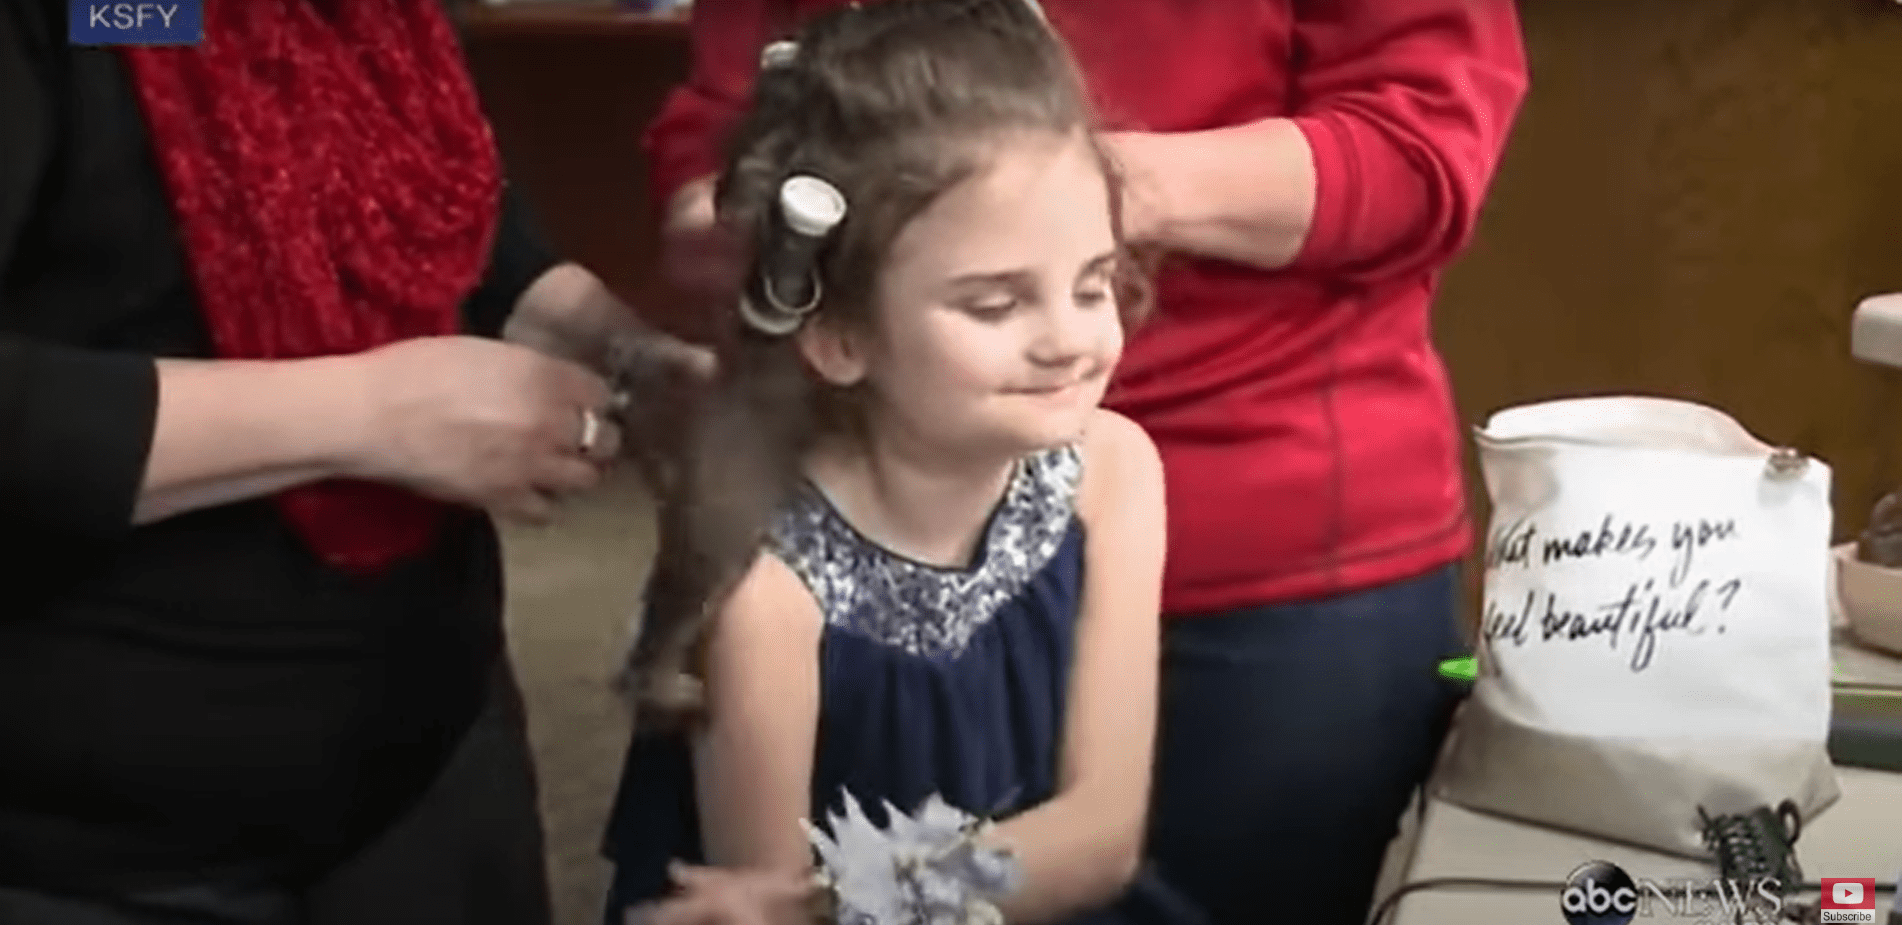 Die 10-jährige Rebekah Spader lässt sich von ihrer Großmutter die Haare machen. | Quelle: Youtube.com/ABC News